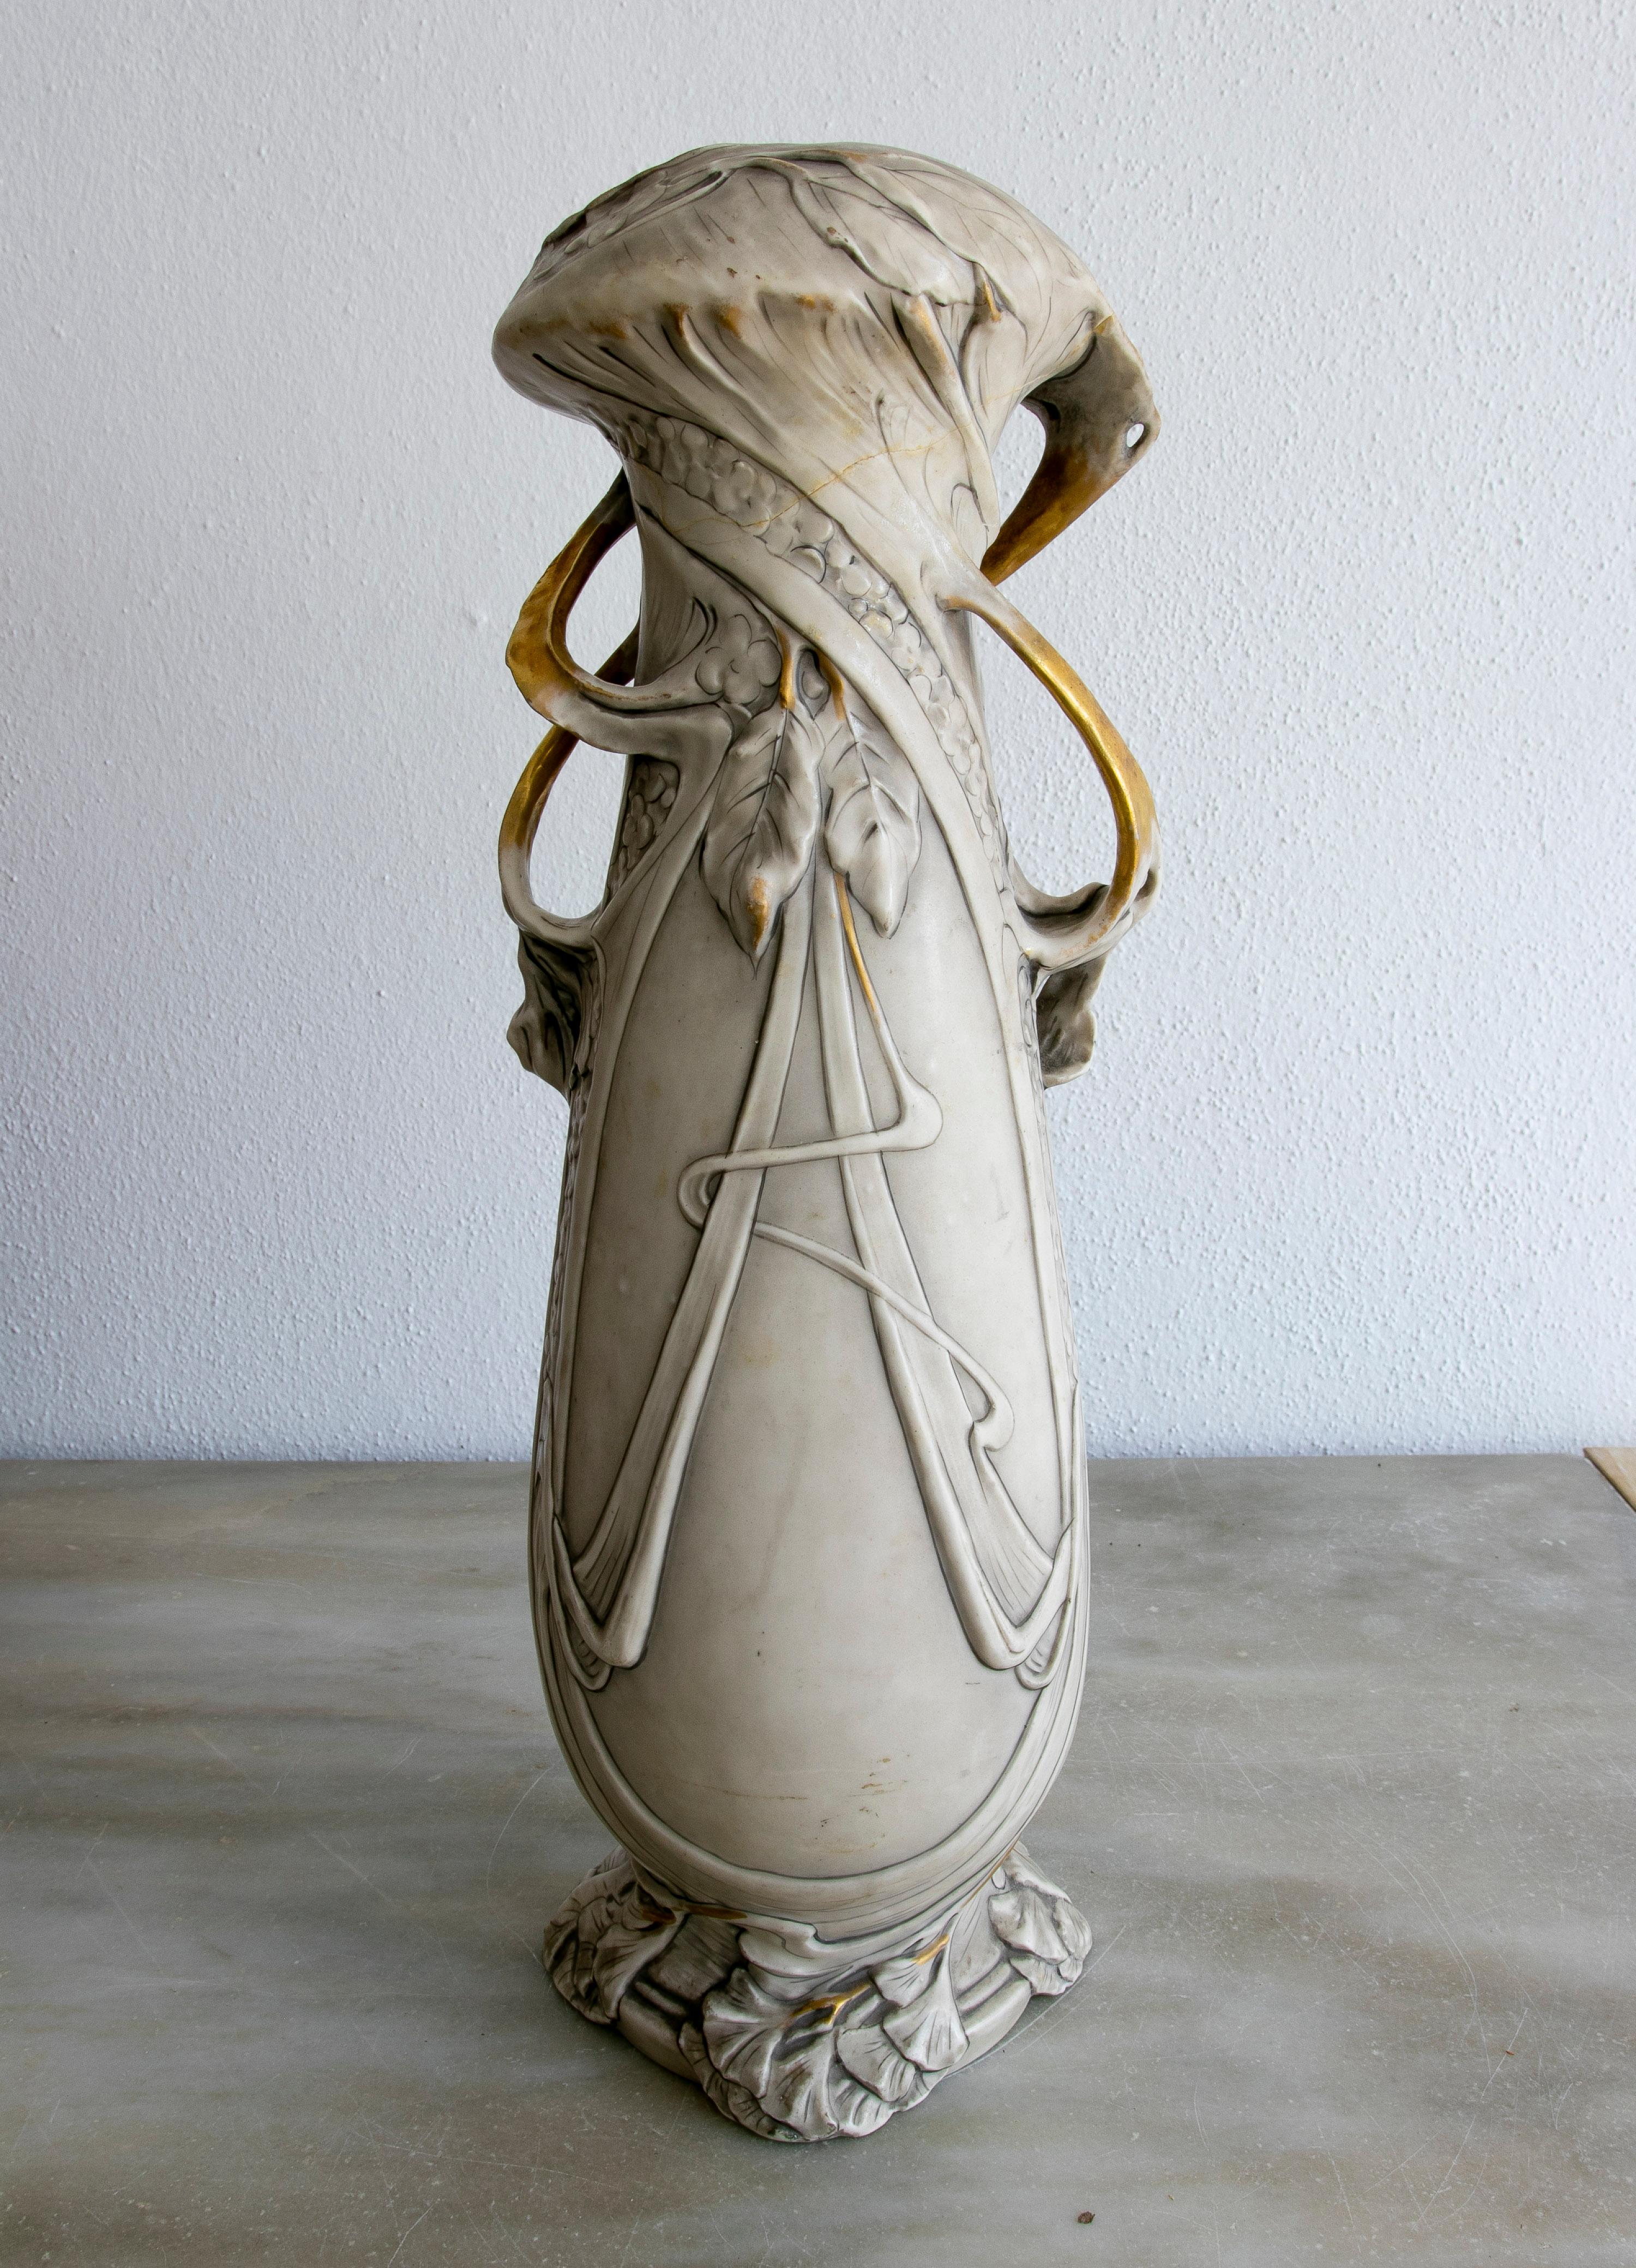 Exquisite 1900s bohemian Art Nouveau biscuit porcelain vase.